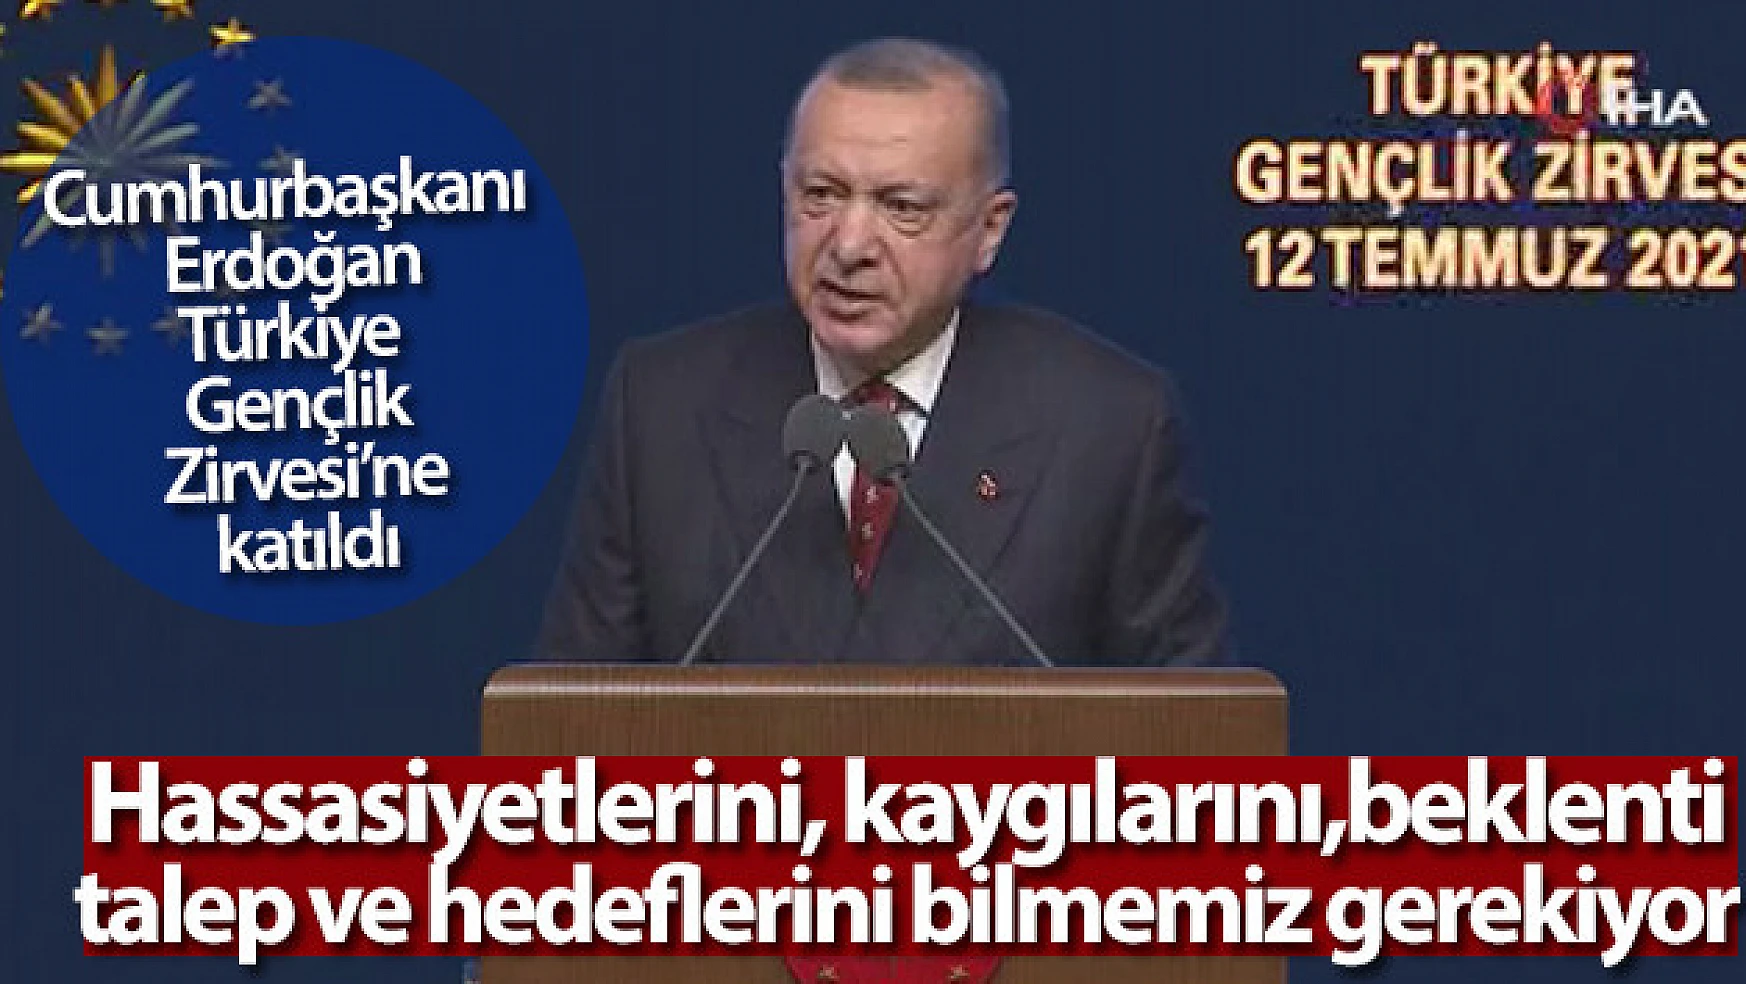 Cumhurbaşkanı Erdoğan, Türkiye Gençlik Zirvesi'ne katıldı